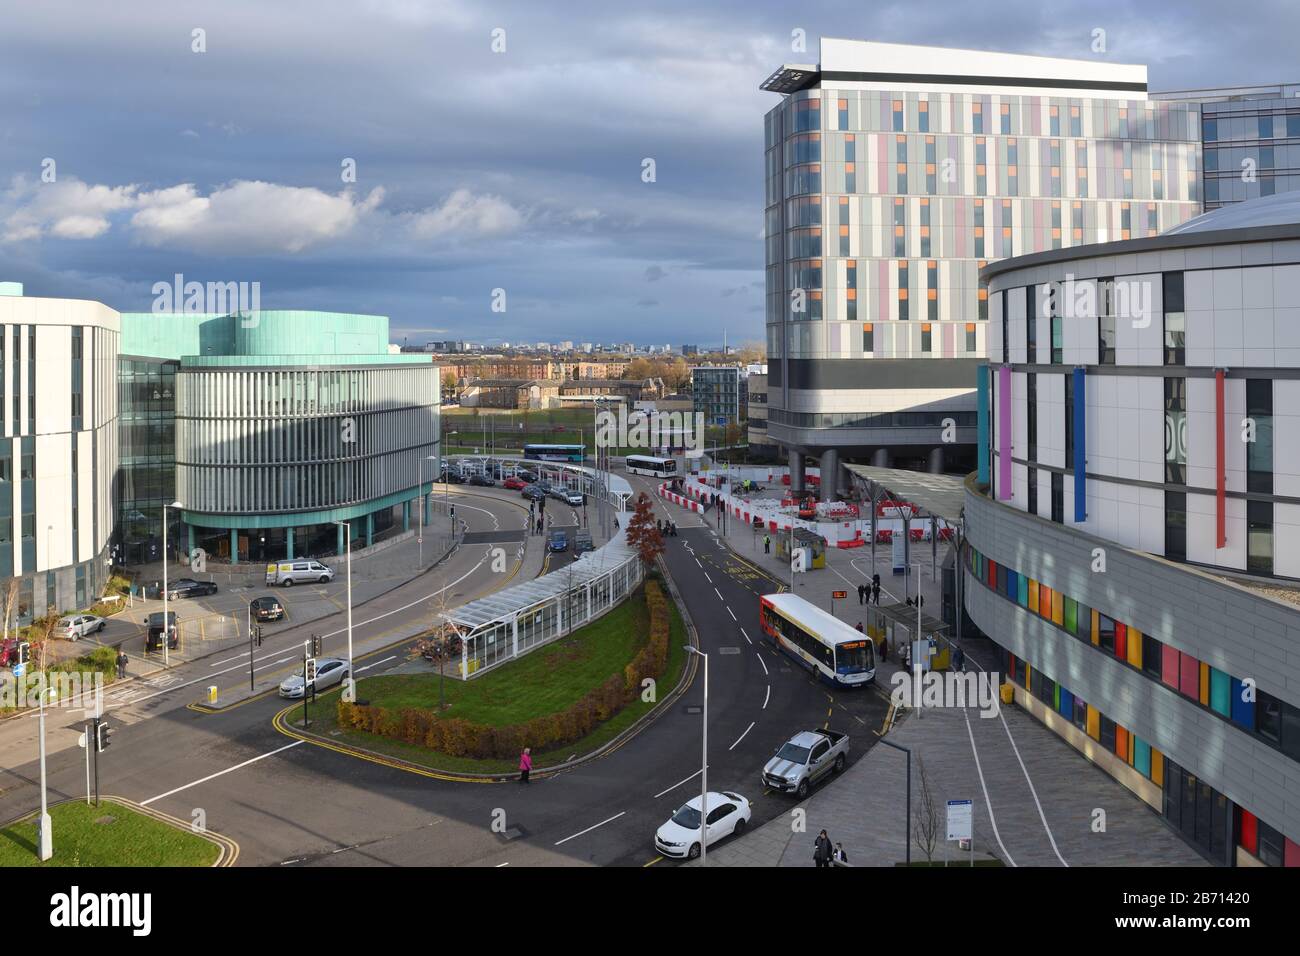 Queen Elizabeth University Lehrkrankenhaus und Royal Children's Hospital in Govan, Glasgow, Schottland, Großbritannien, Europa Stockfoto